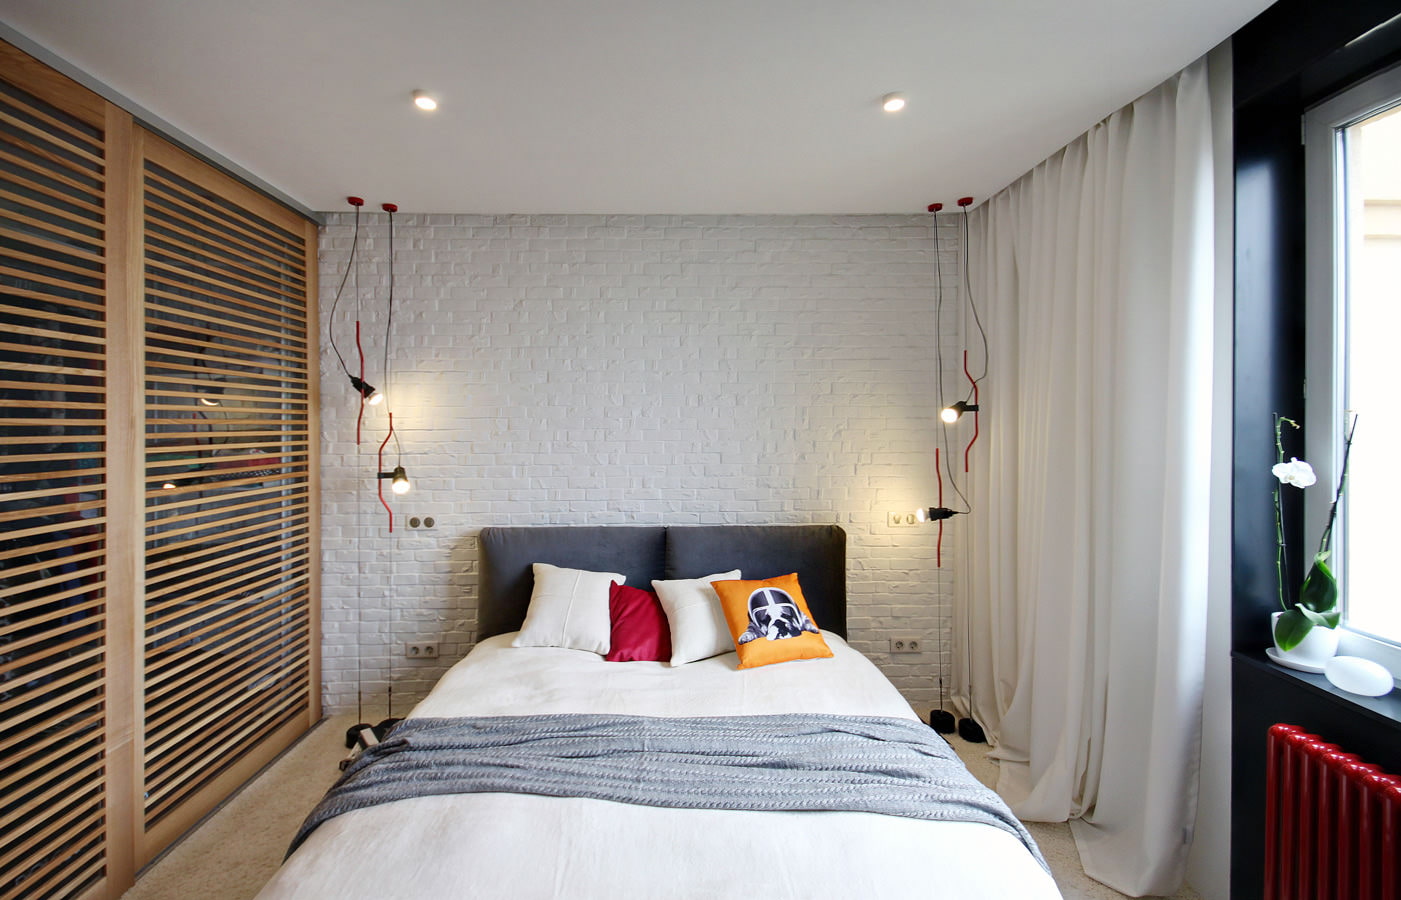 siling digantung dalam gambar reka bentuk bilik tidur